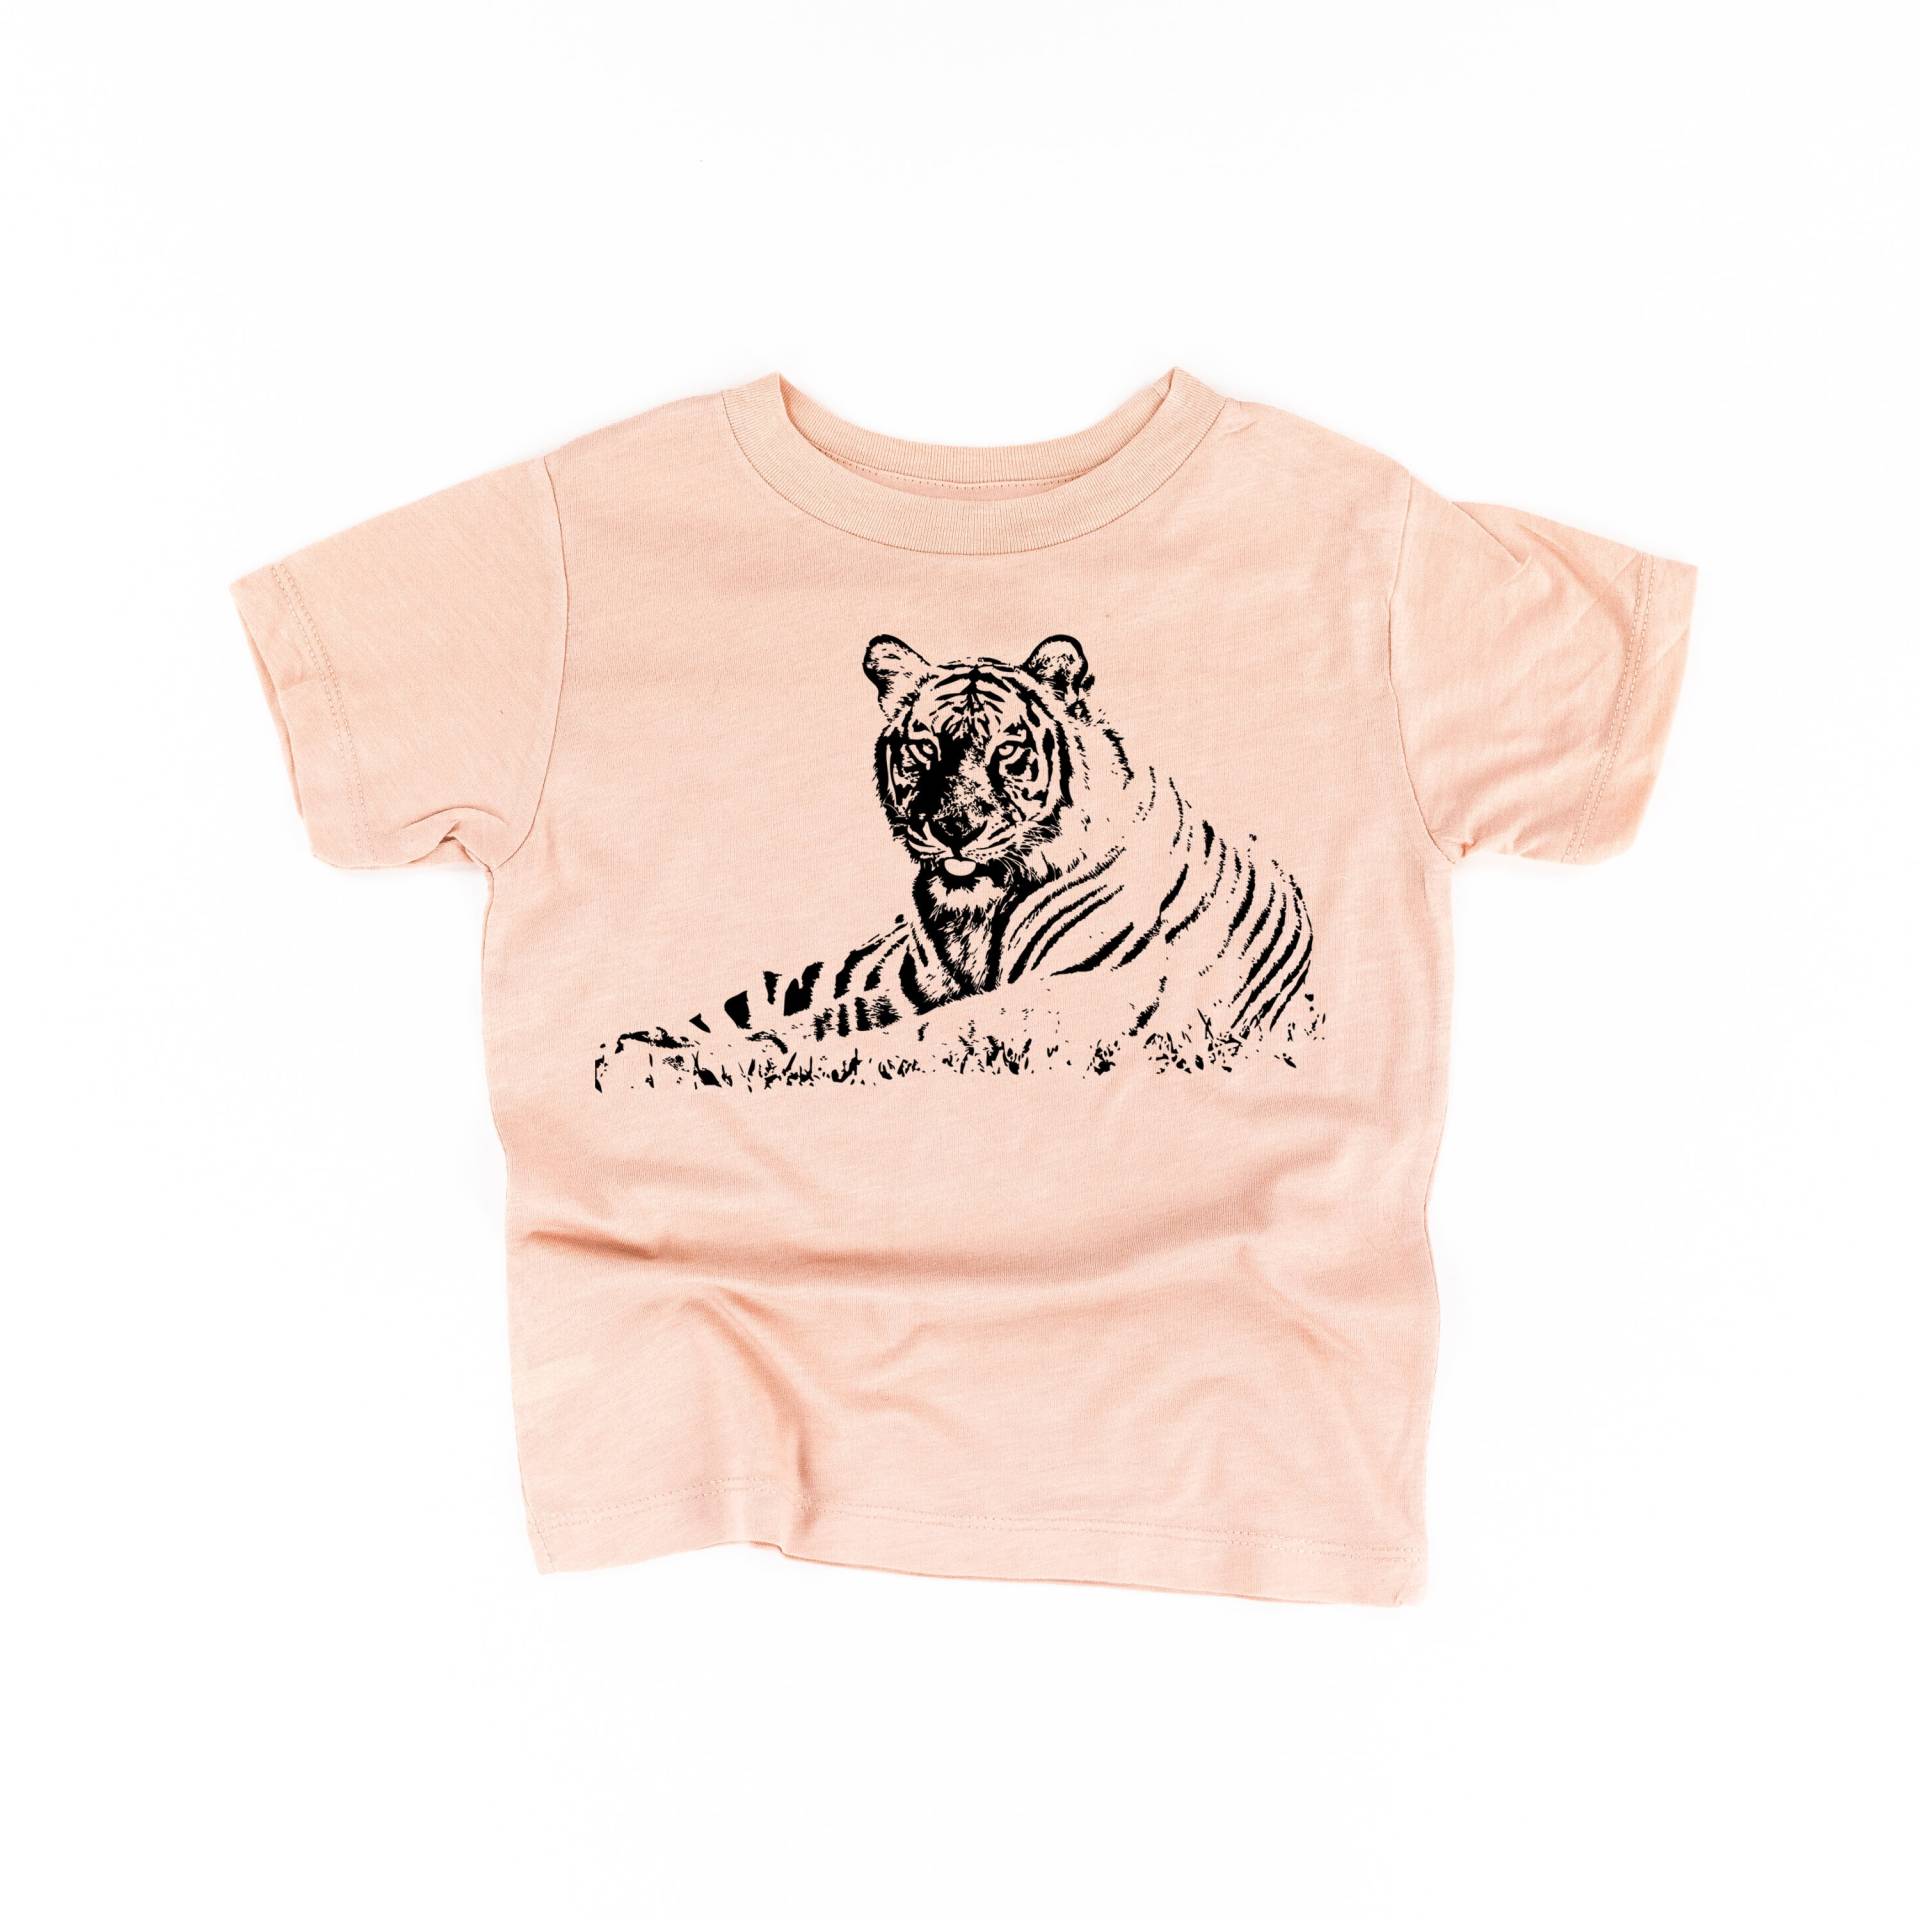 Tiger - Kindershirt | Kleinkind Shirt Littler Girl Junge Zoo Shirts Für Den Kinder Tees von LittleMamaShirtShop